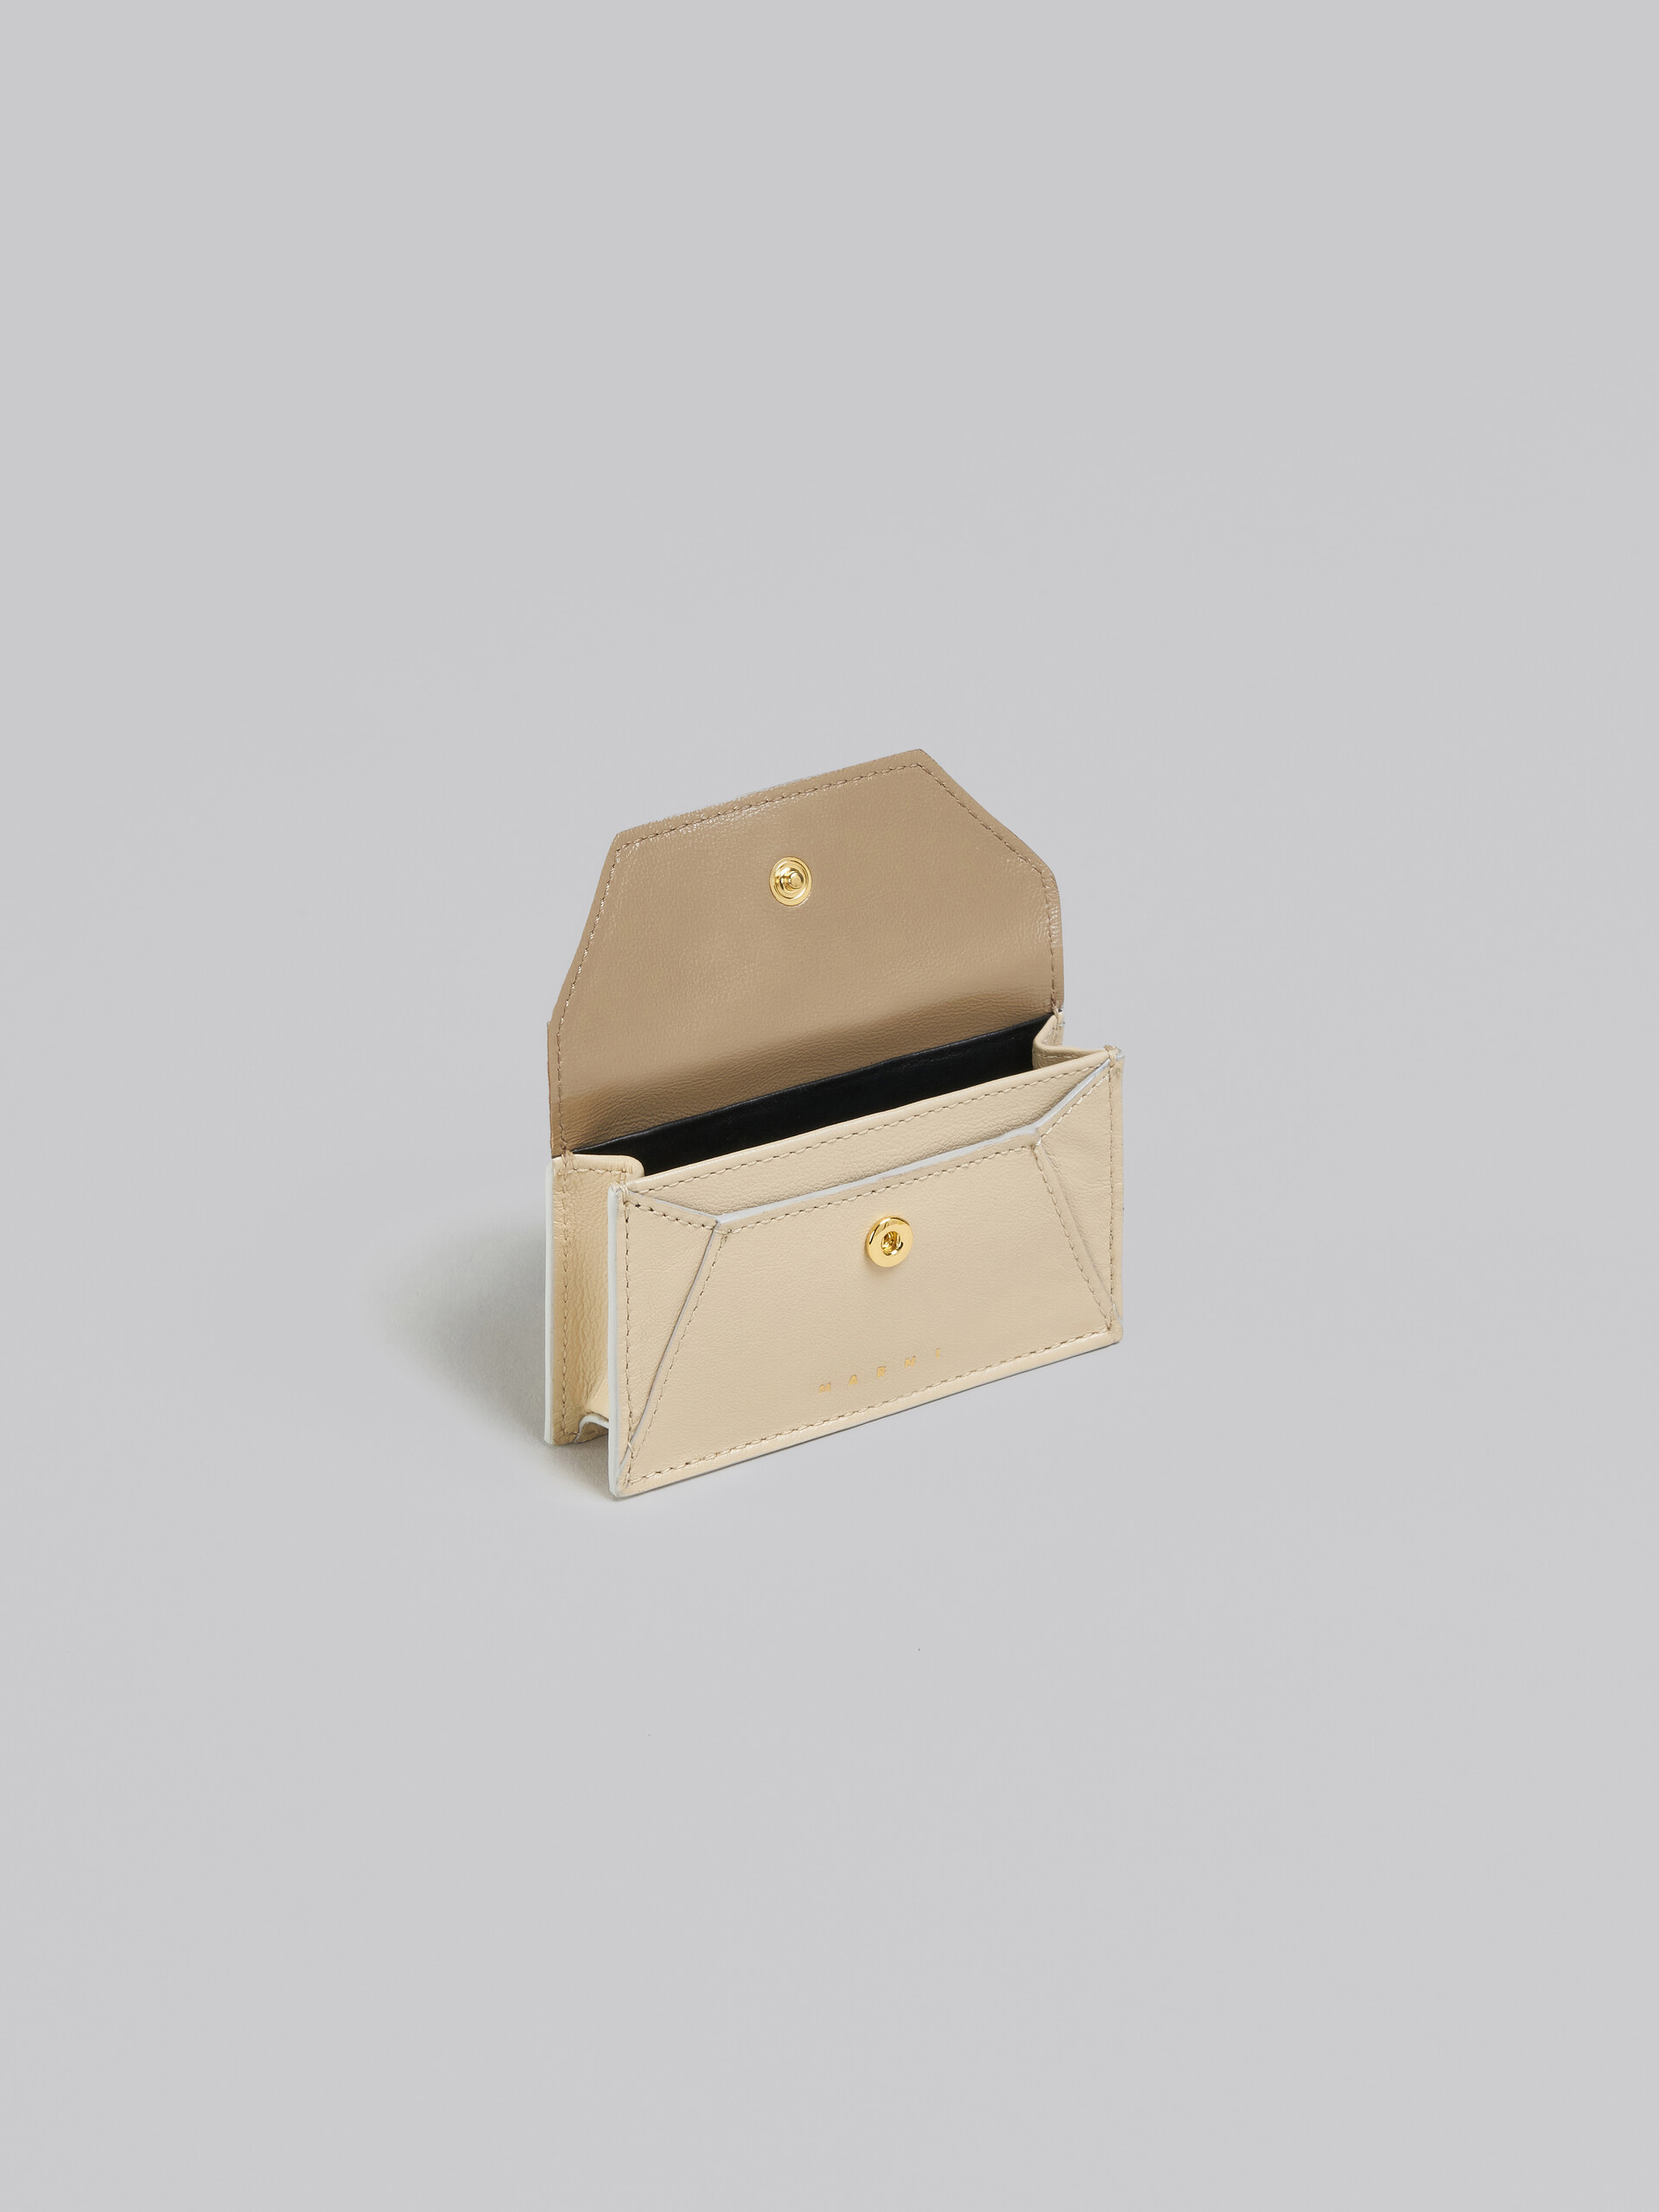 ブラウン、ホワイト レザー製カードケース - 財布 - Image 2